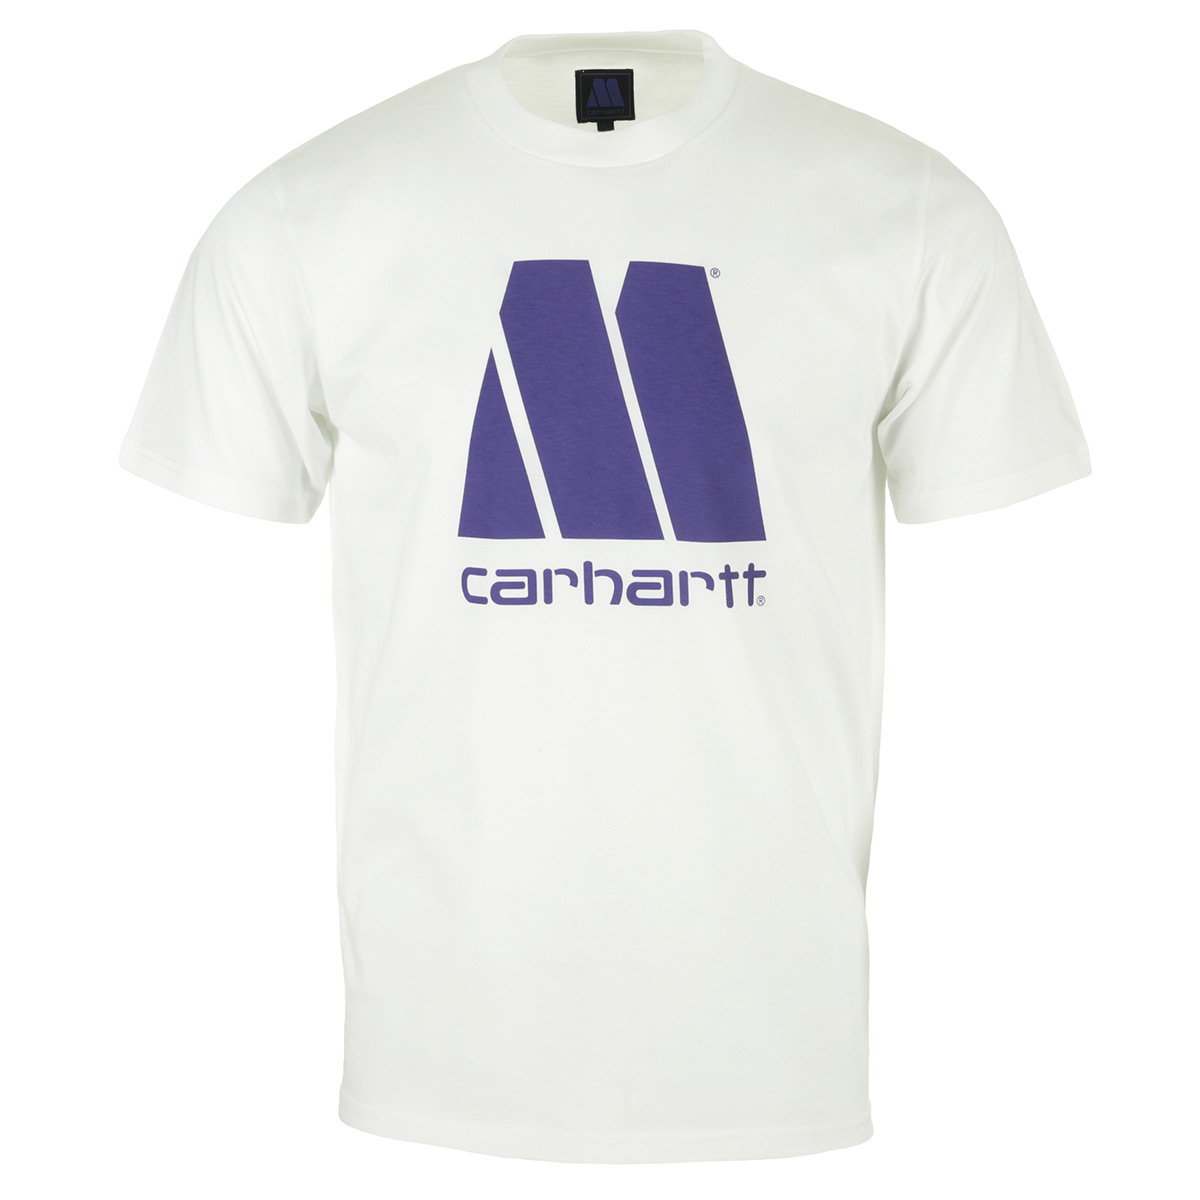 Carhartt Motown T-shirt